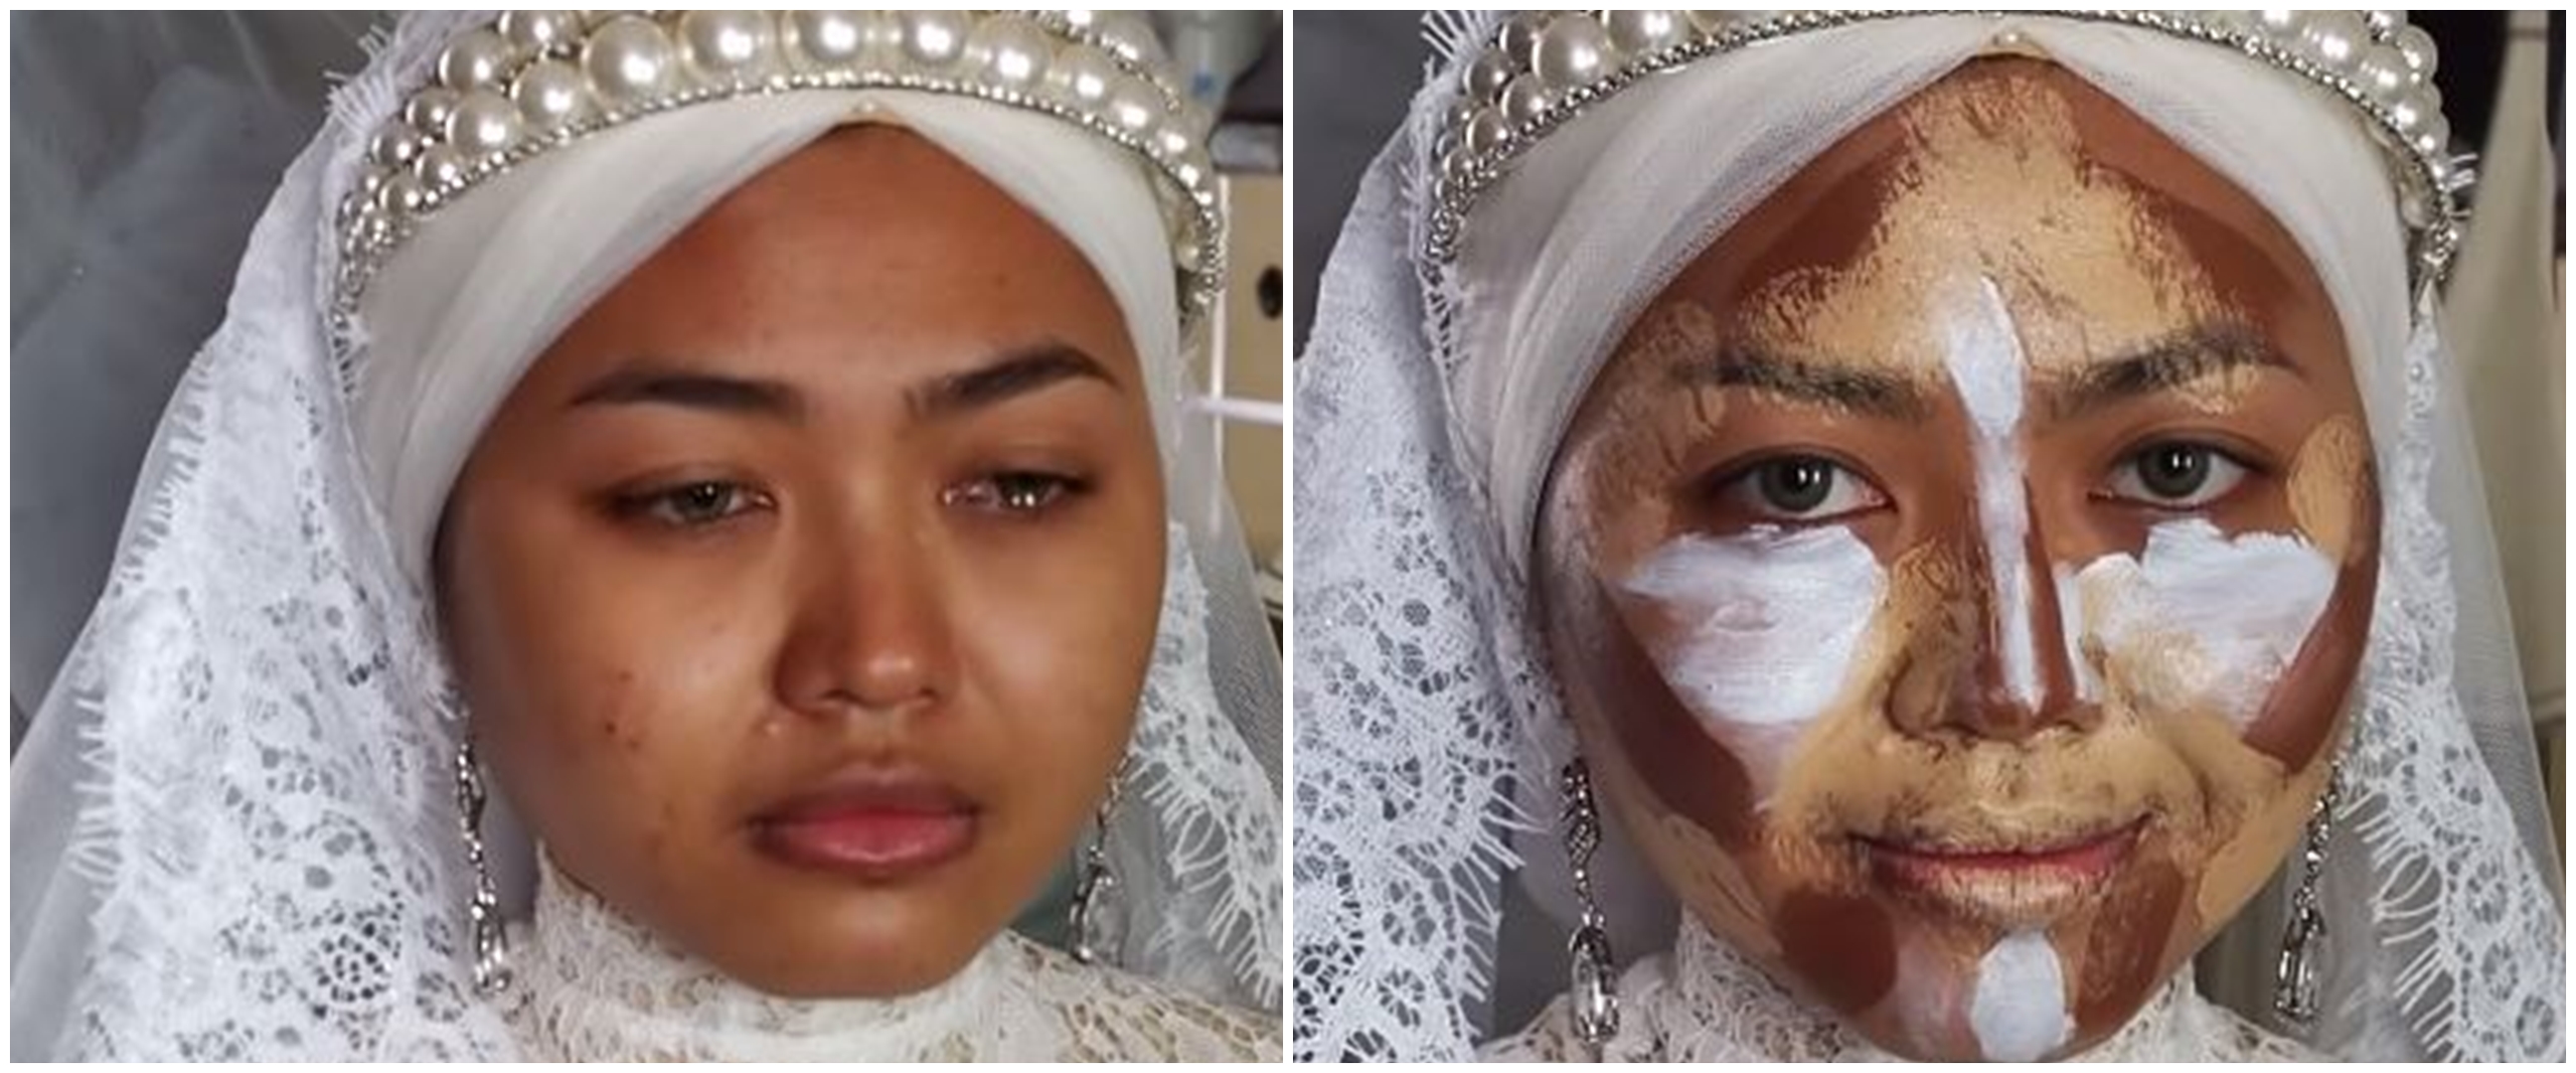 5 Transformasi makeup wanita dandan pengantin, MUA-nya panen pujian